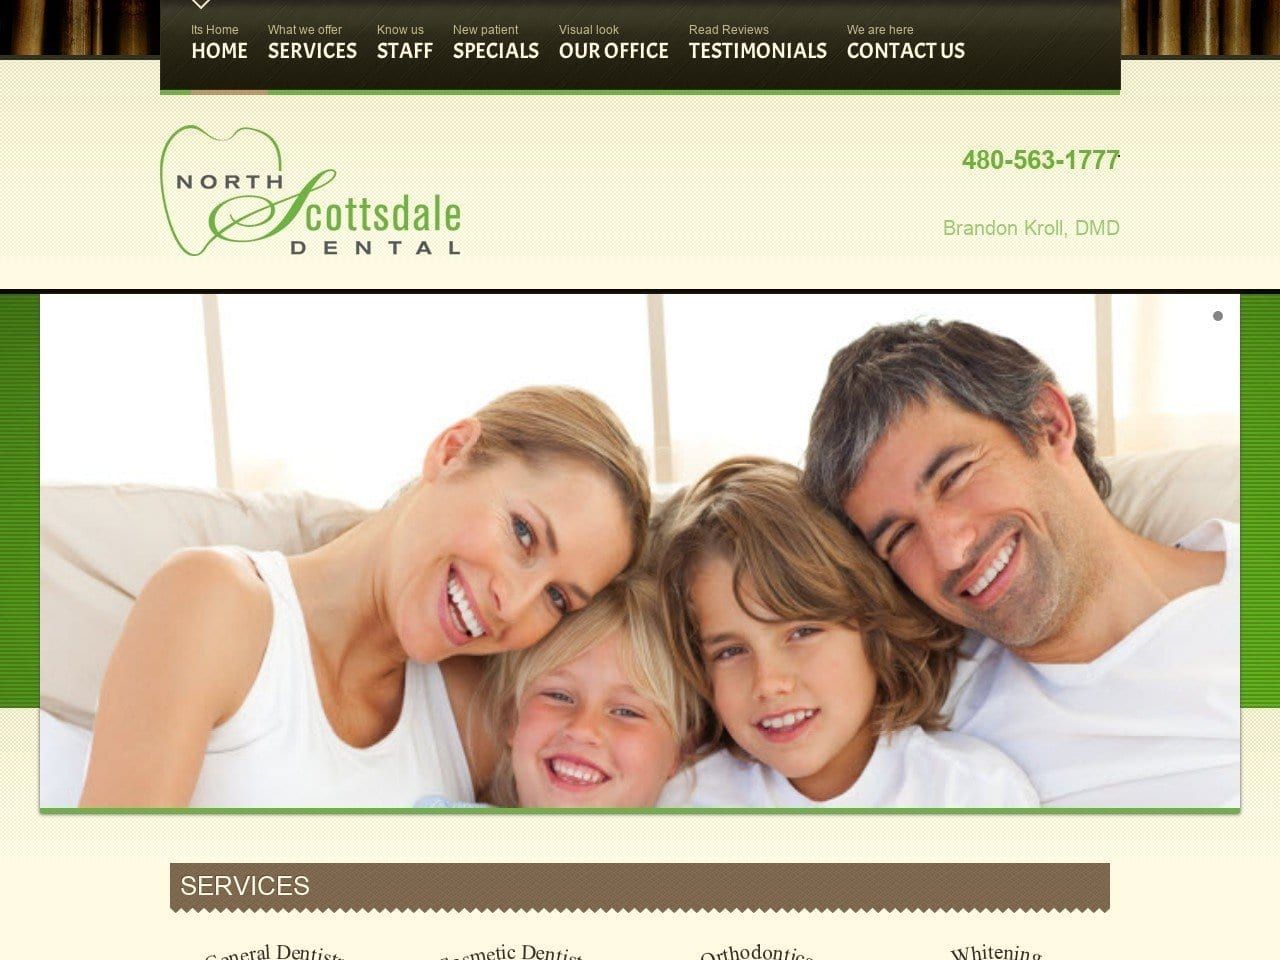 North Scottsdale Dental Website Screenshot from northscottsdaledental.com